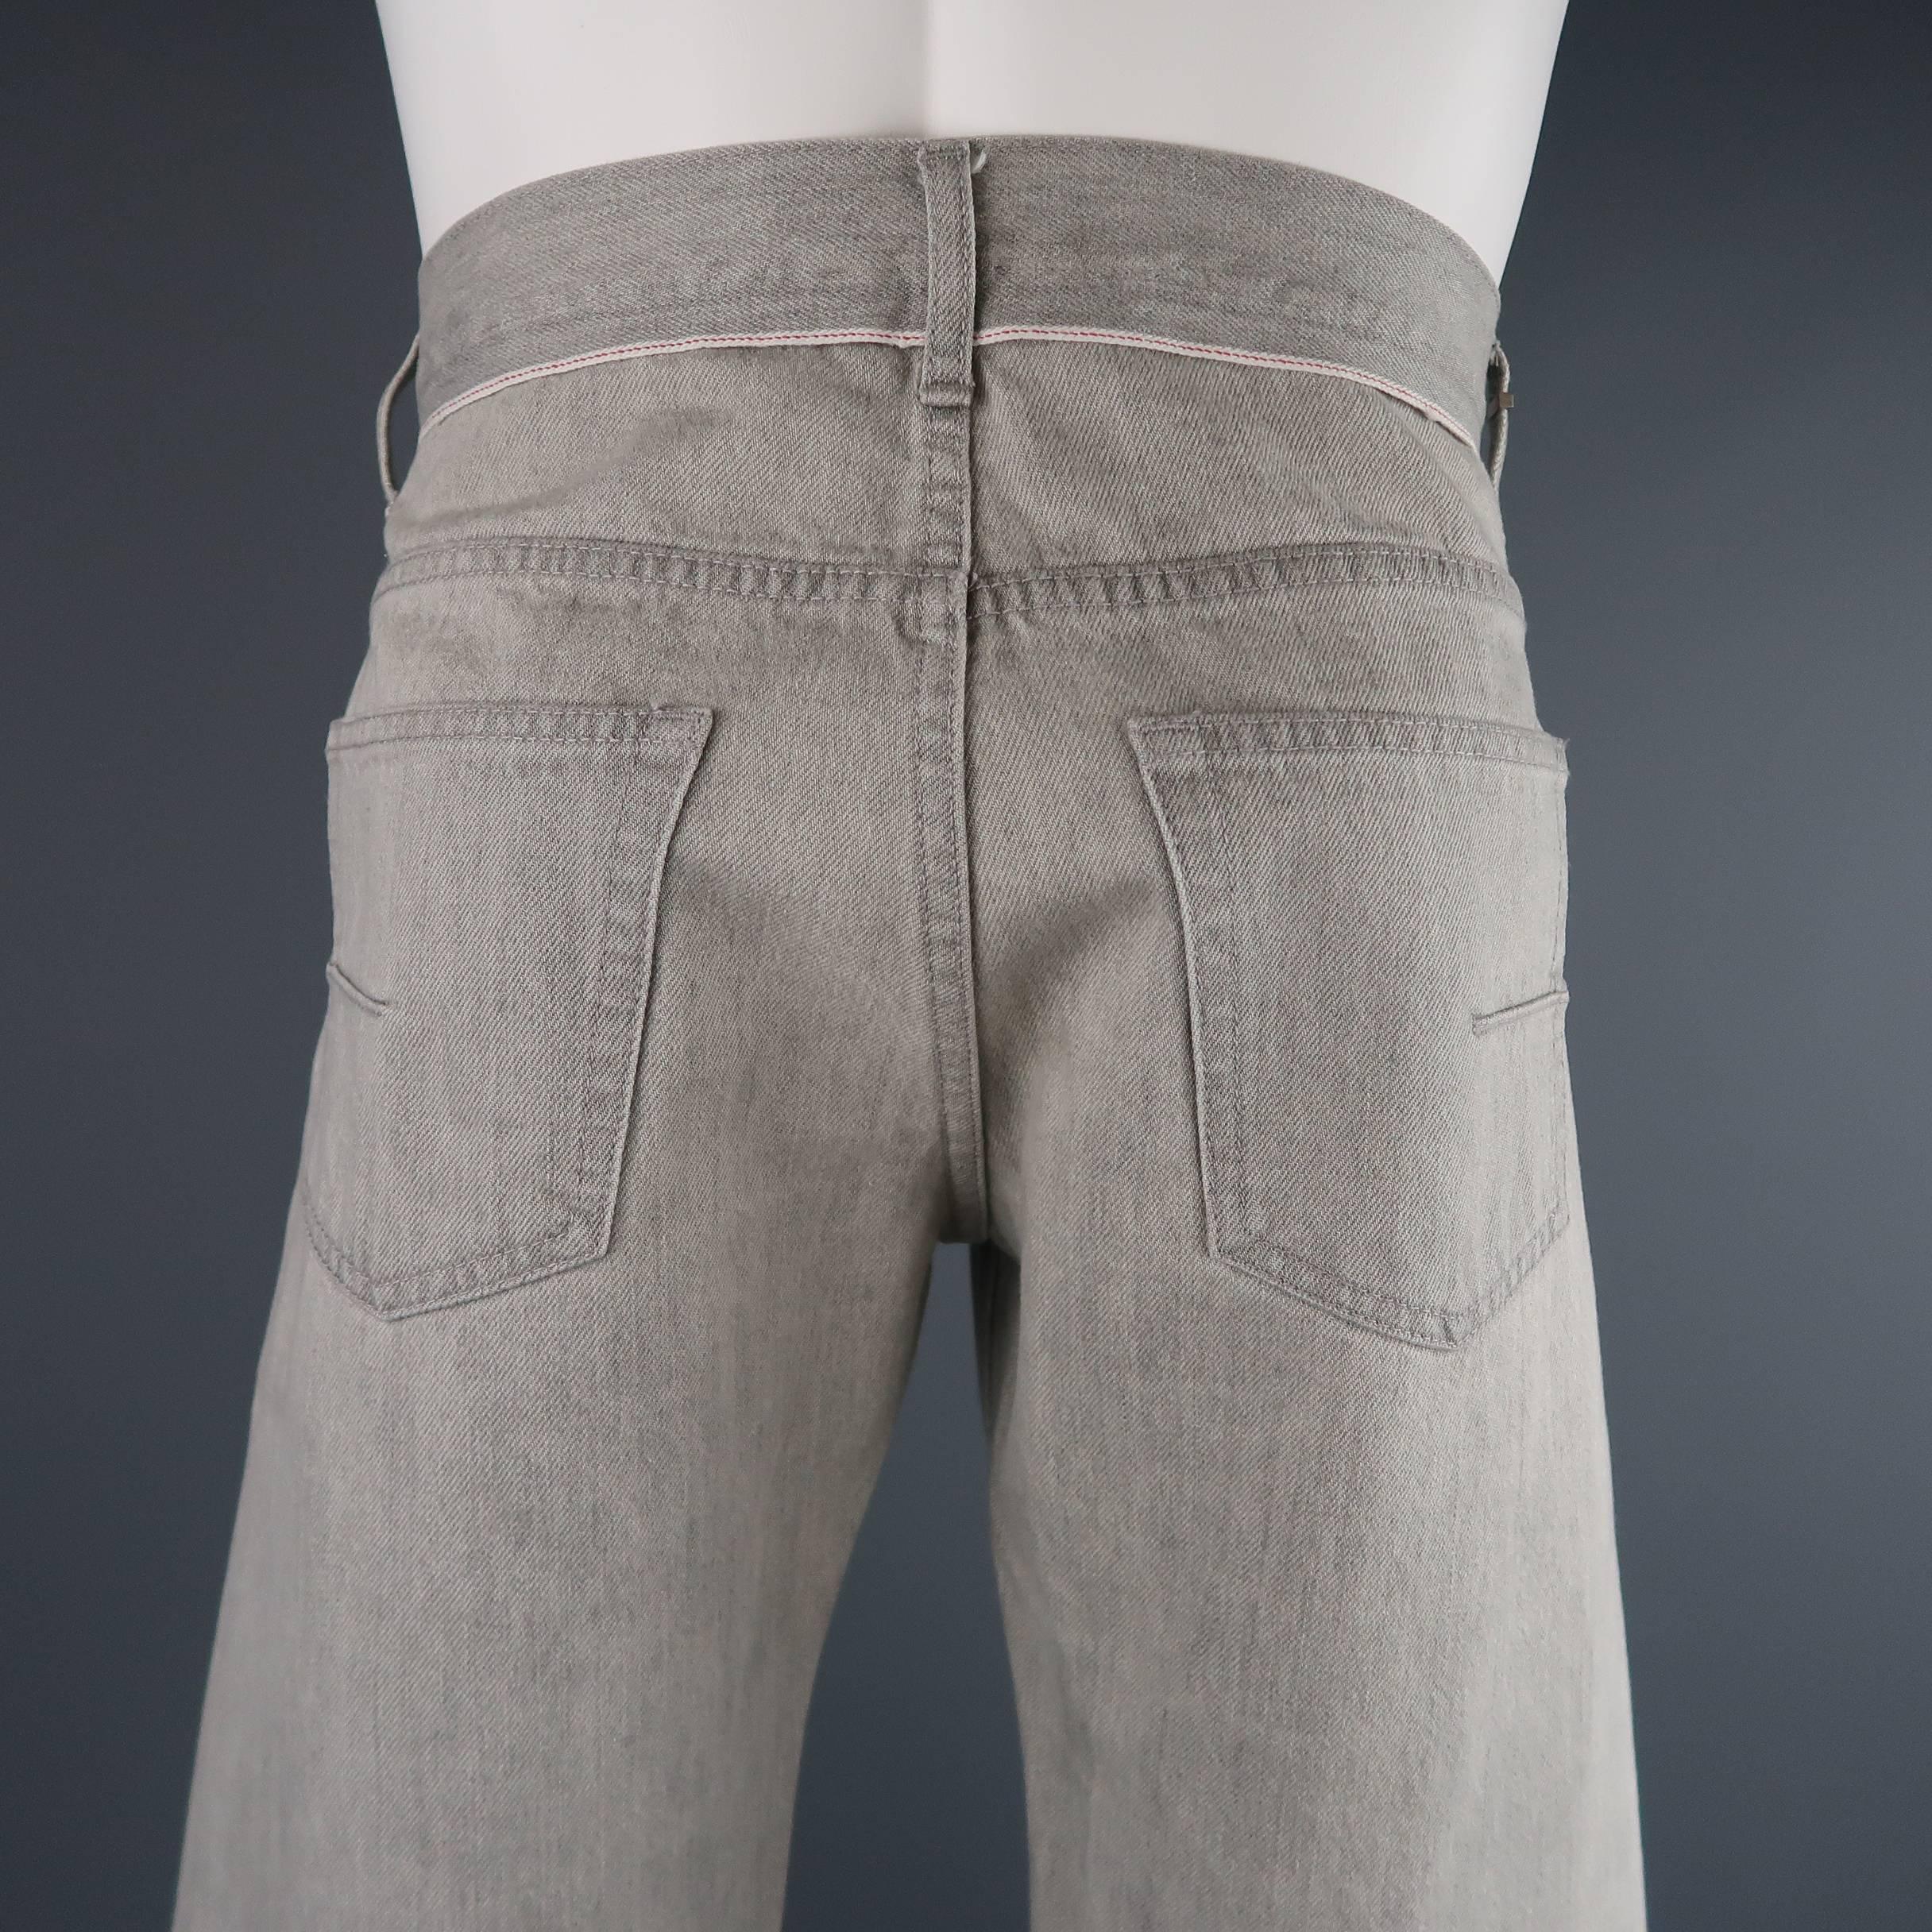 Men's DIOR HOMME Size 30 Light Grey Solid Selvedge Denim Skinny Jeans